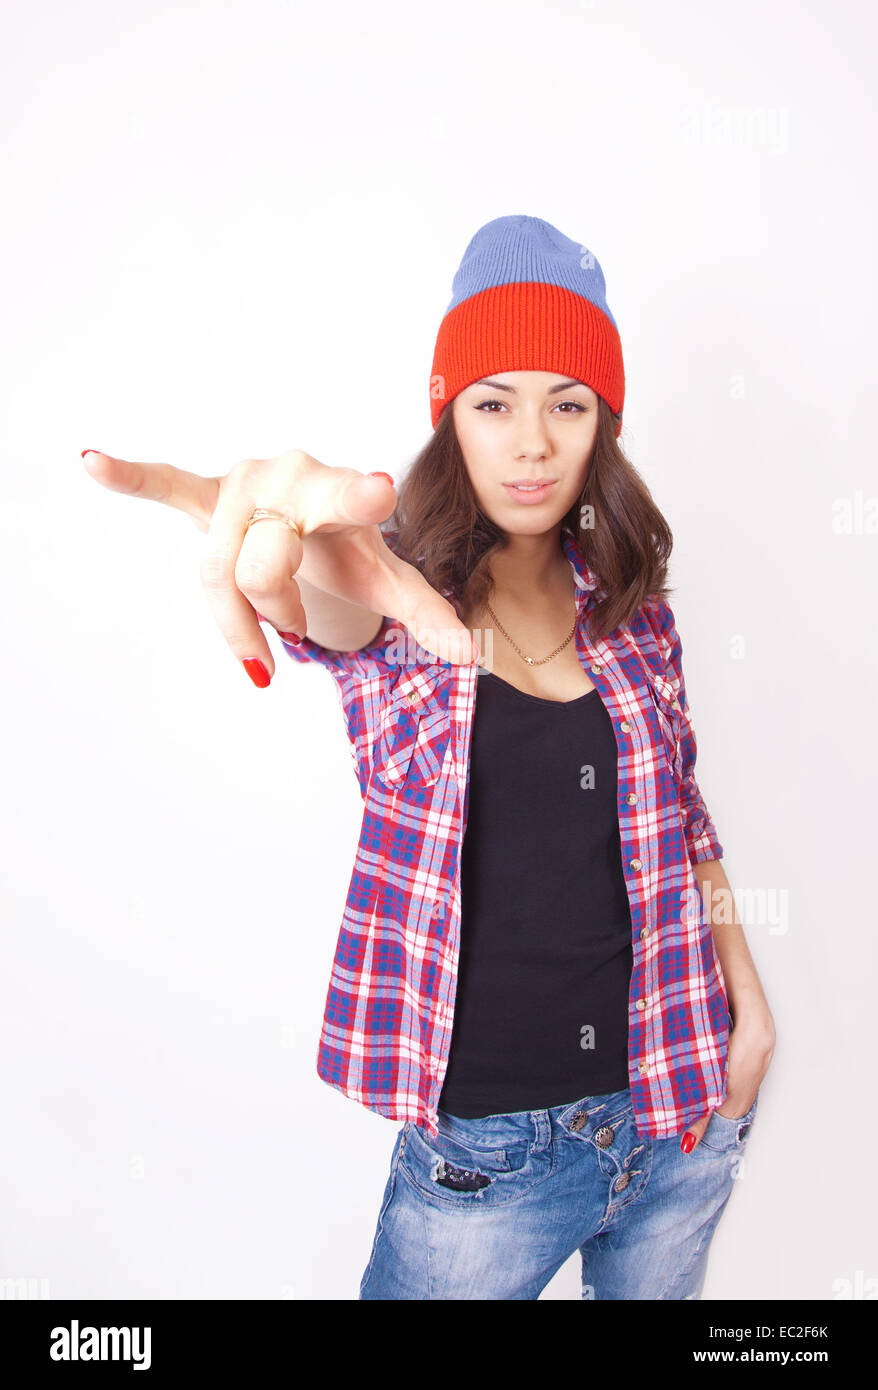 Carino hipster ragazza adolescente con beanie hat in posa guardando la fotocamera Foto Stock